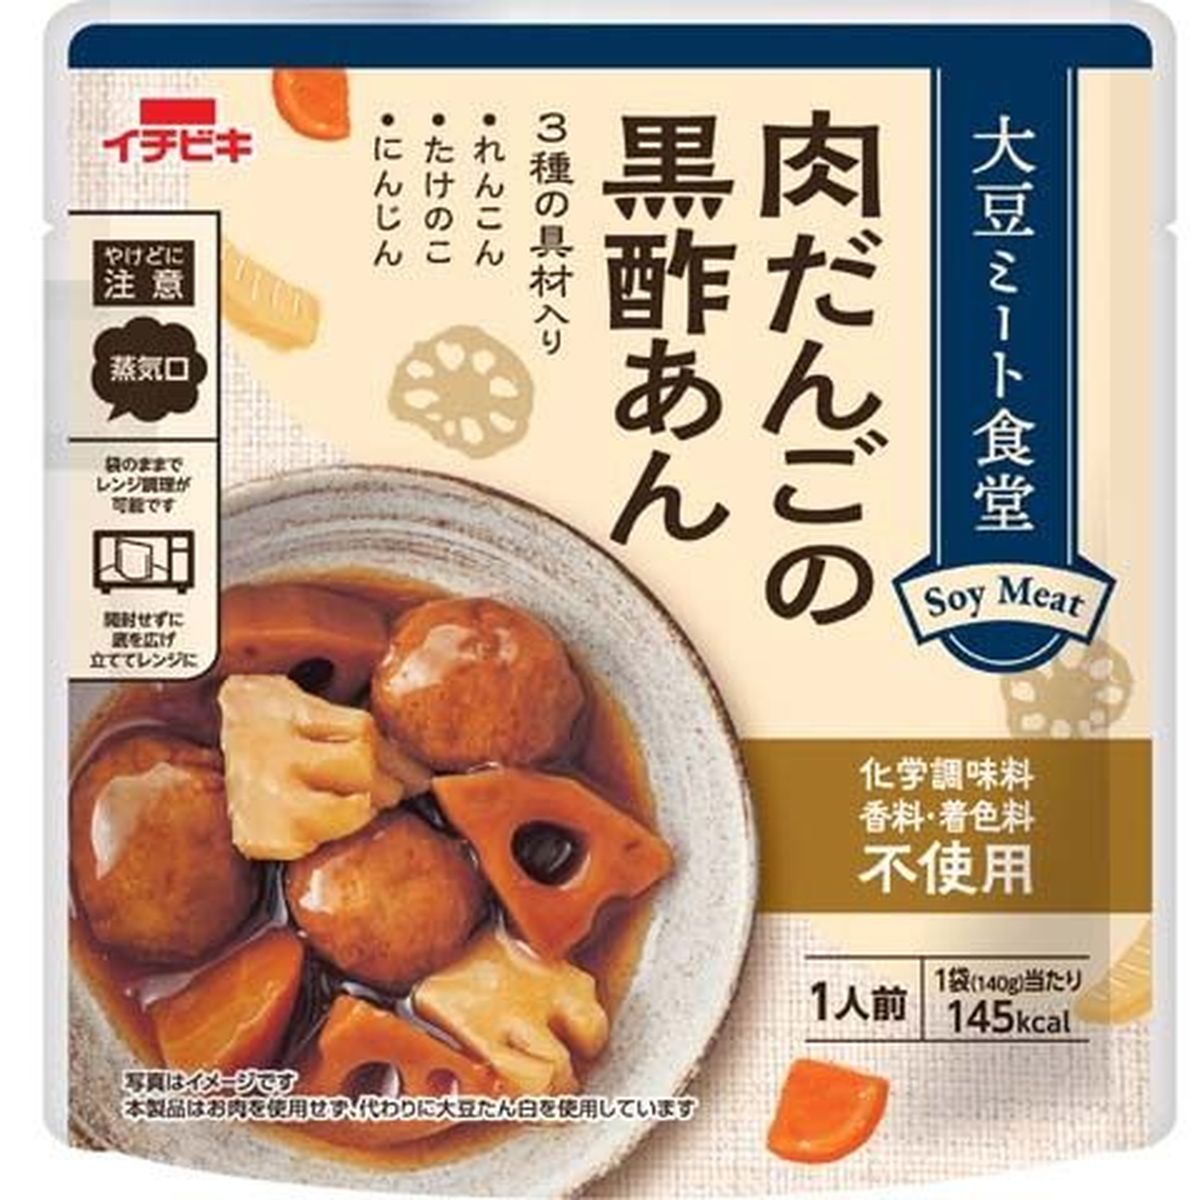 【10個入リ】イチビキ 大豆ミート食堂 肉団子黒酢アン 140g